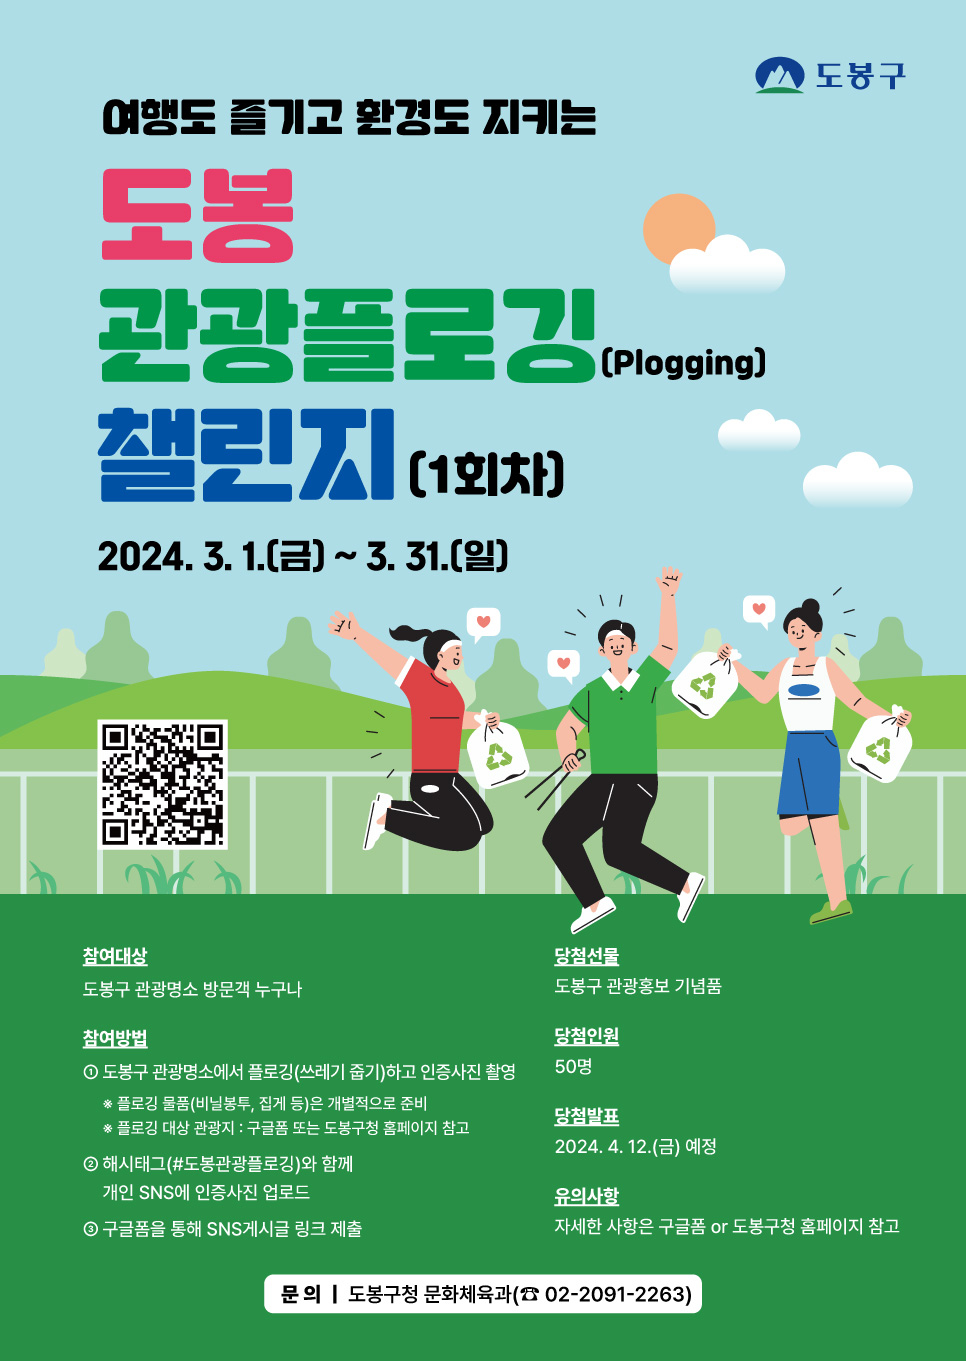 서울 도봉구 관광플로깅 챌린지 홍보 포스터. 도봉구 제공